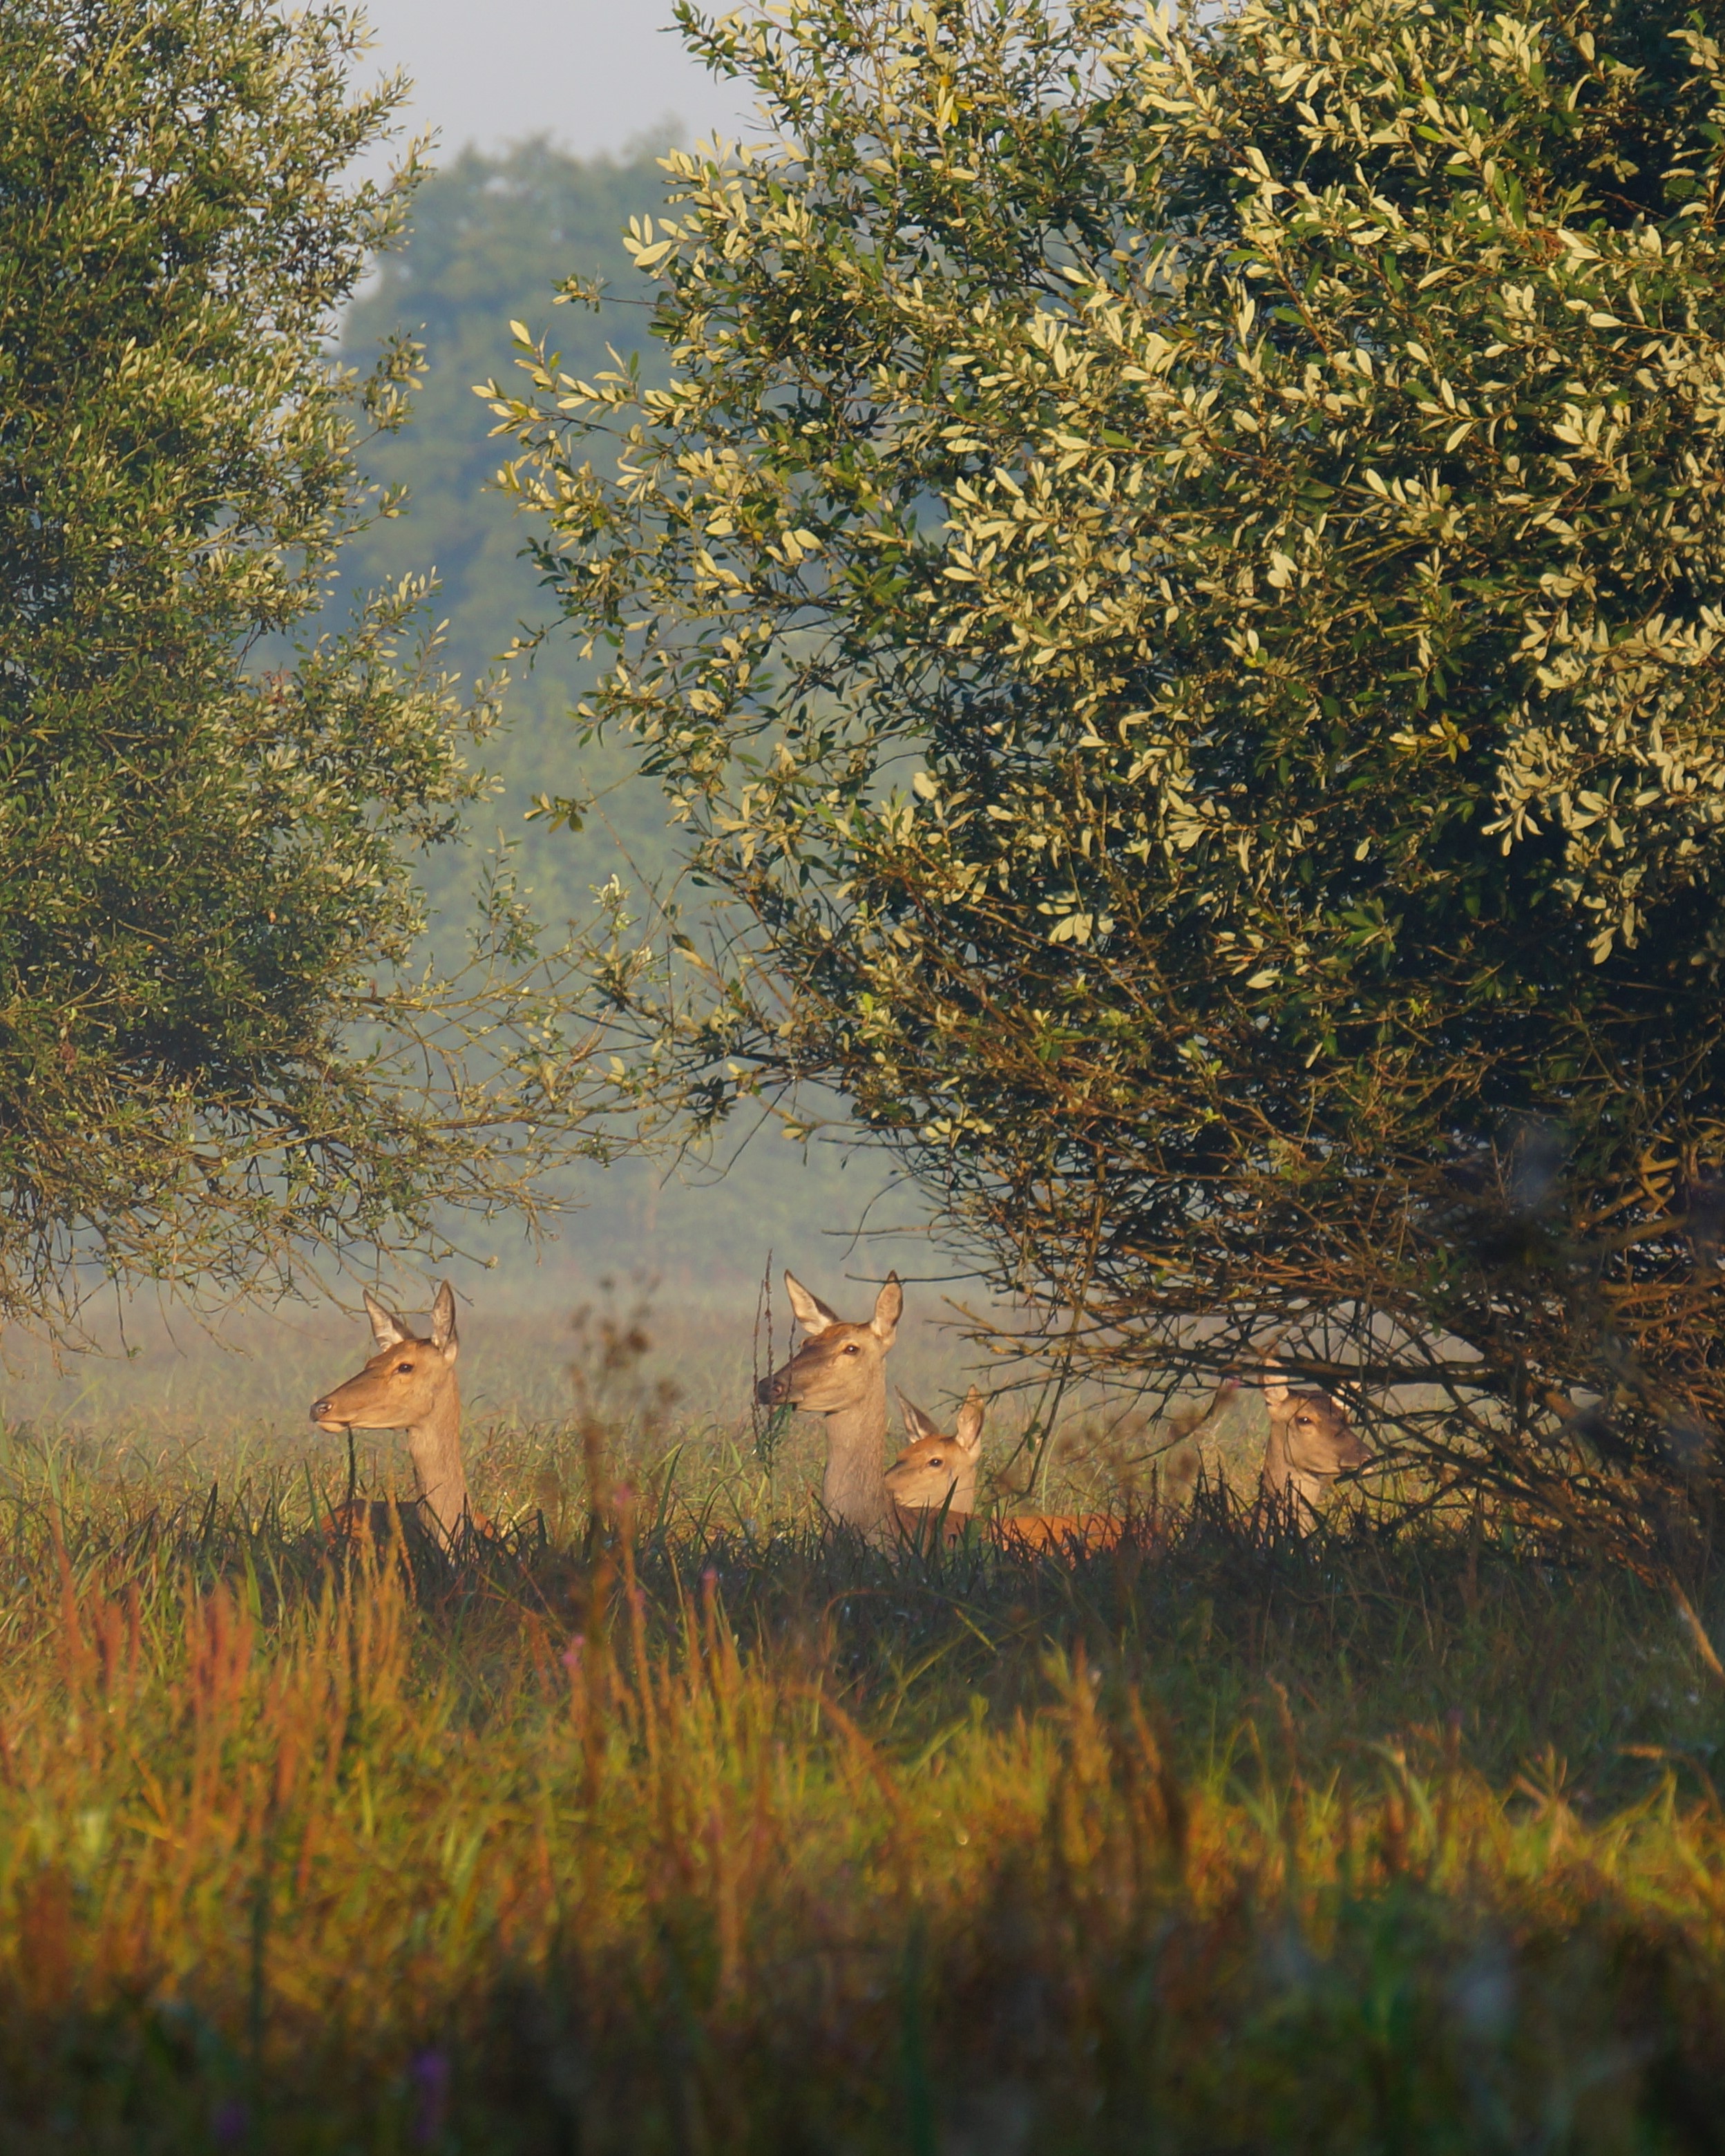 Zdjęcie chmary łań jelenia szlachetnego wykonane w Puszczy Kampinoskiej (zielony szlak - Pindal)